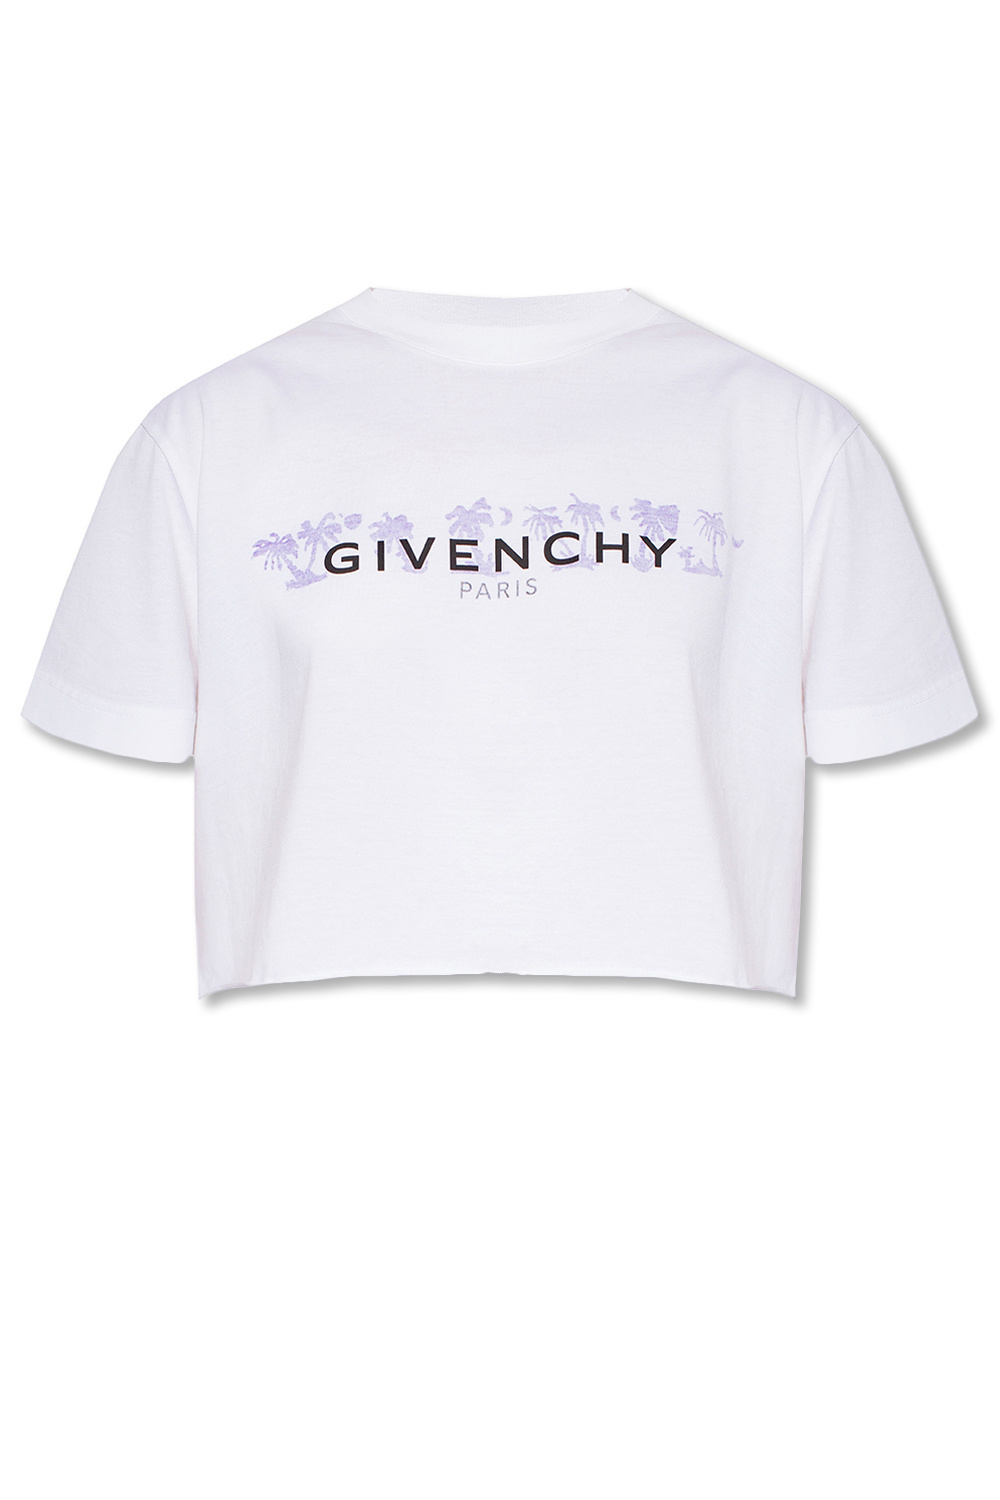 Givenchy malaysia